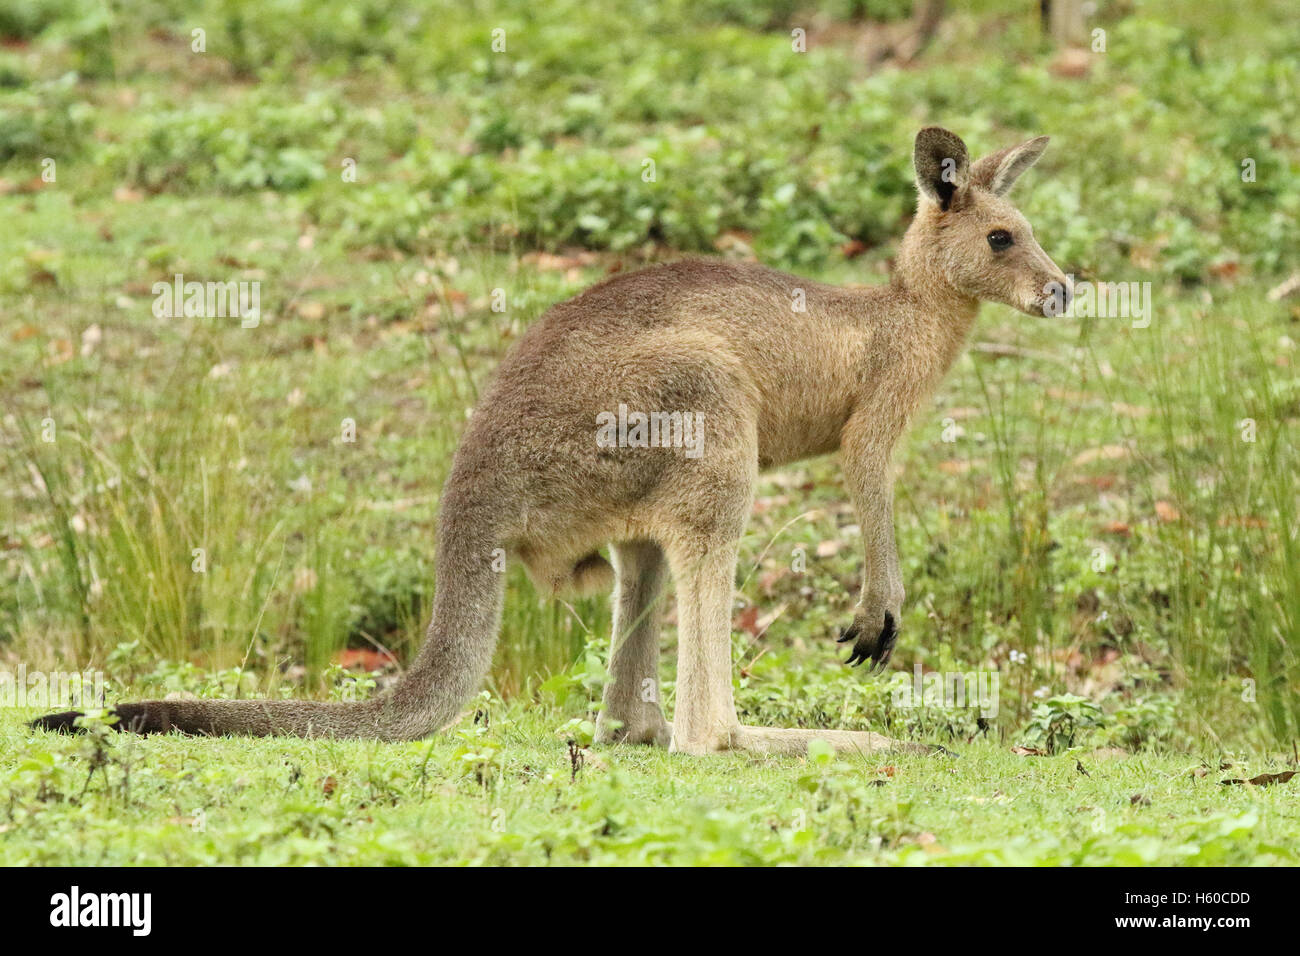 A juvenile Kangaroo looking away. Stock Photo